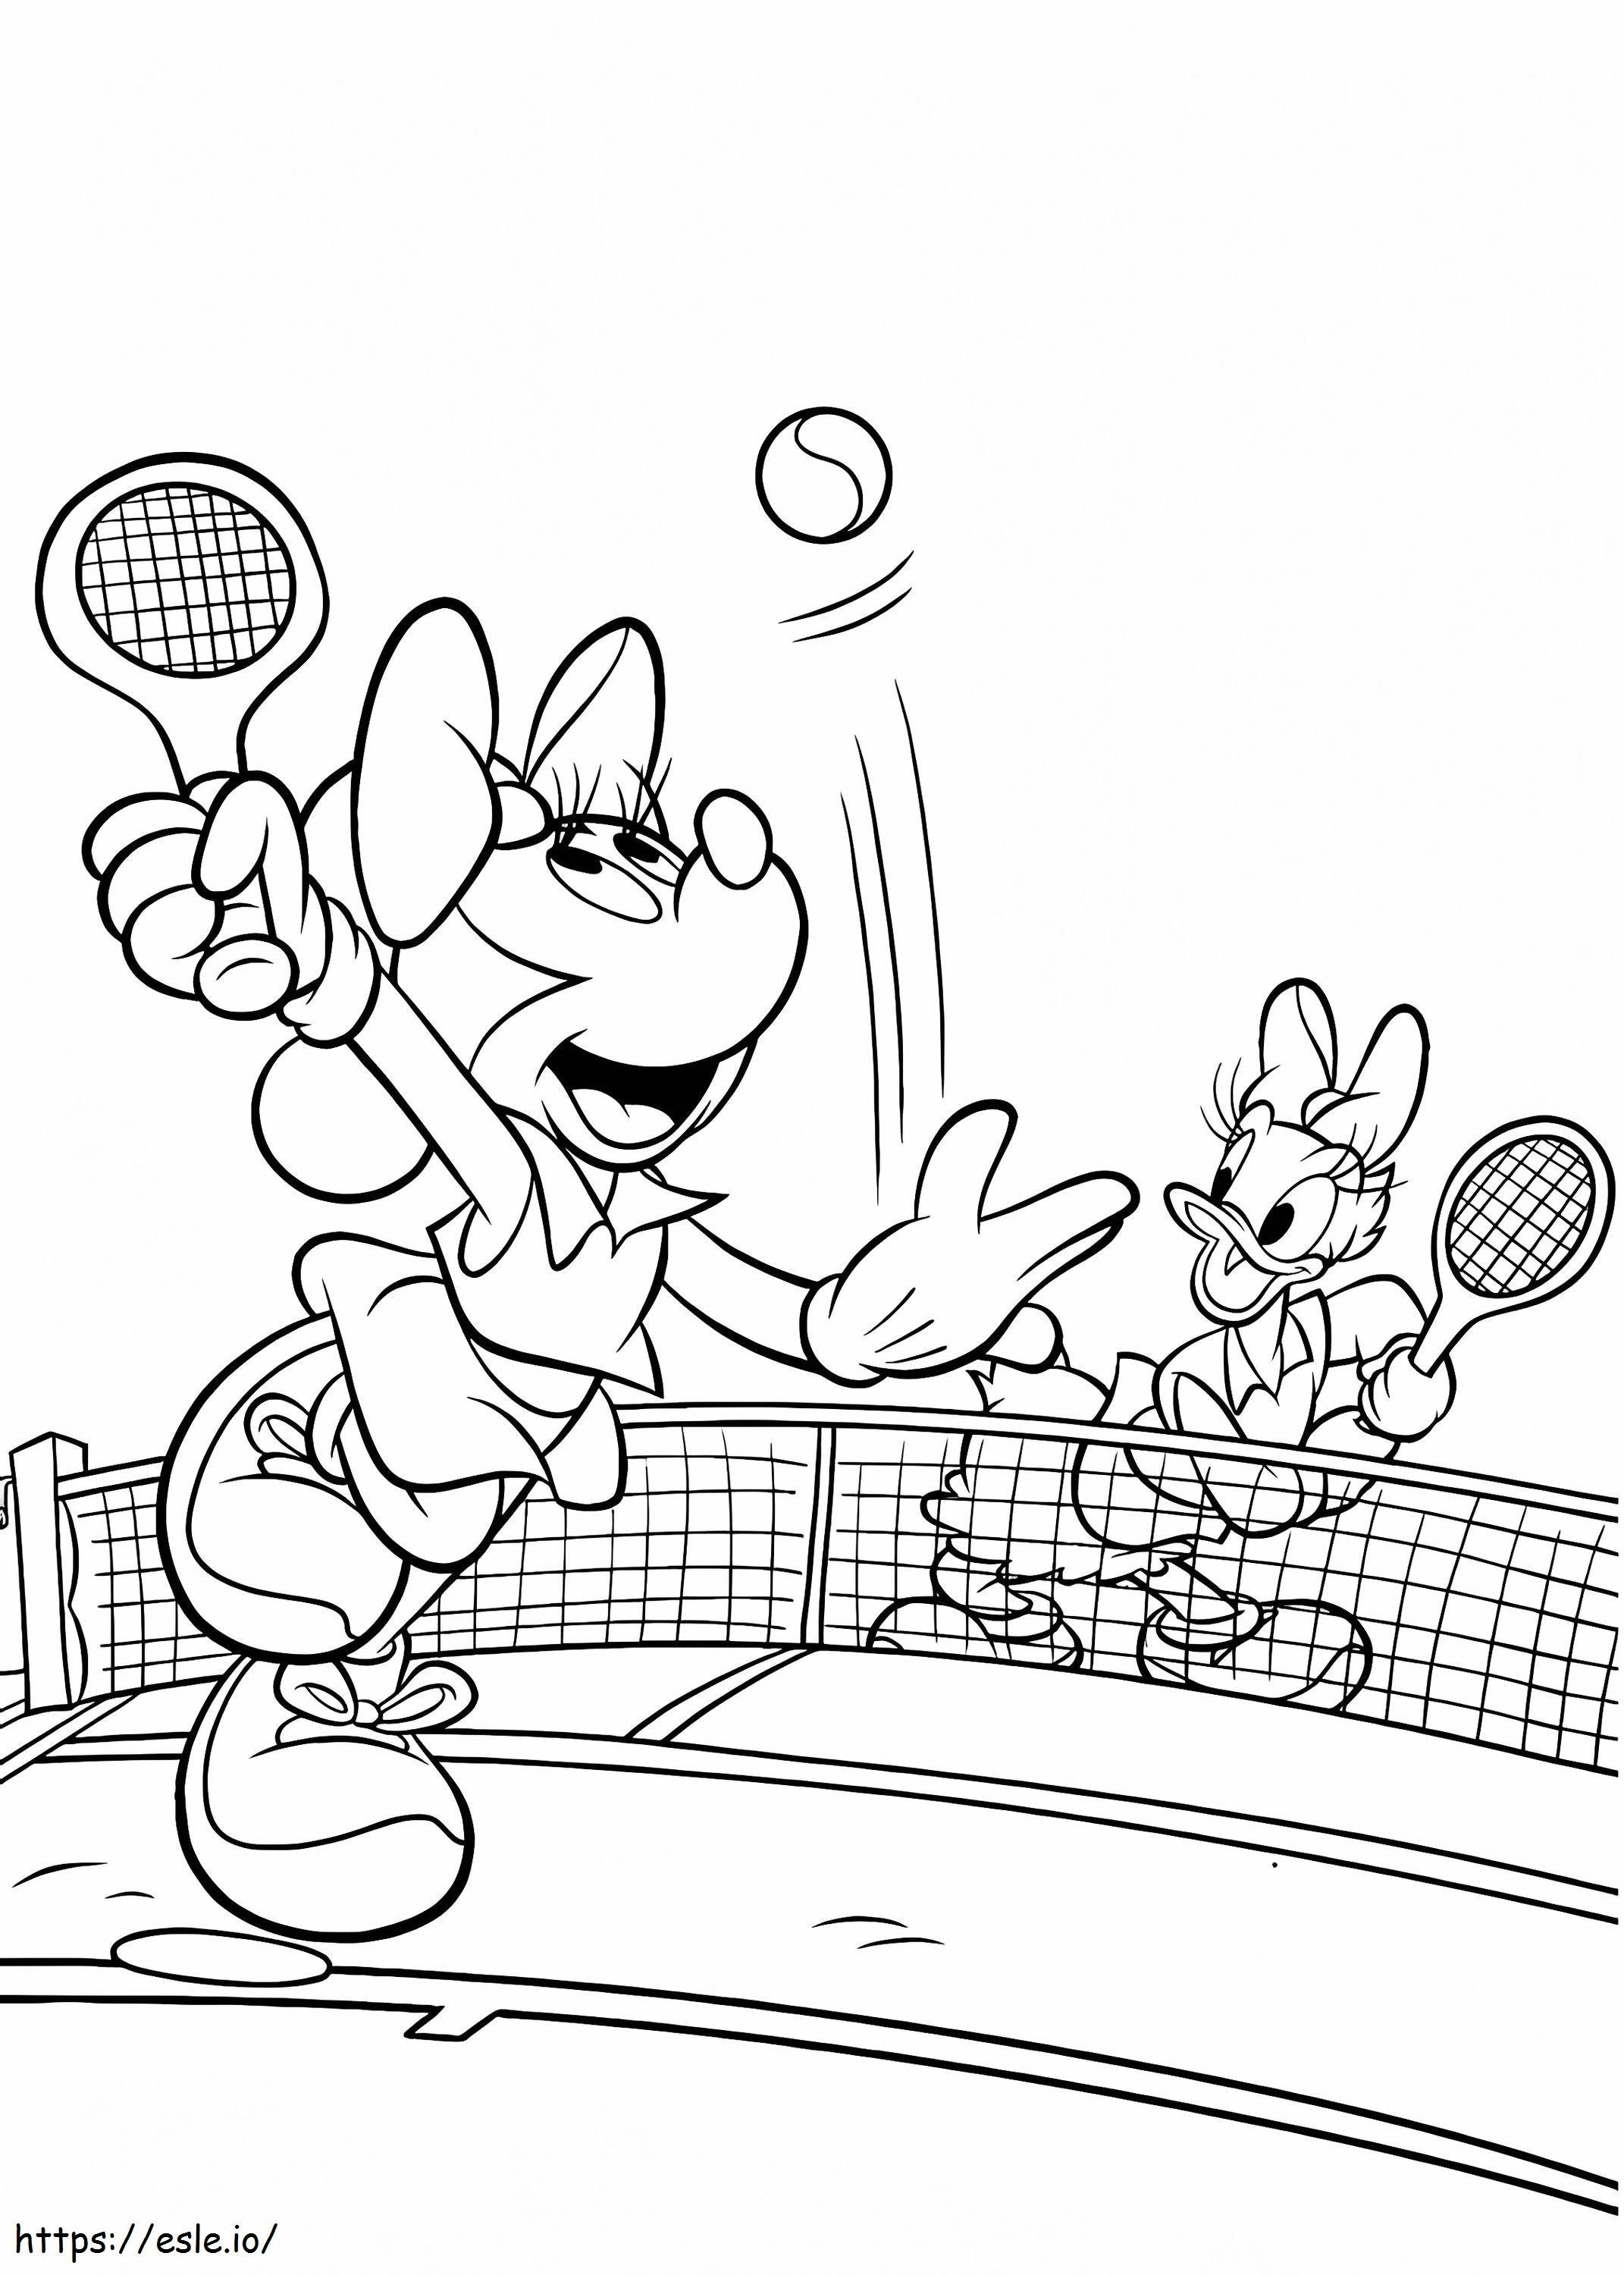  Minnie și Daisy jucând tenis A4 de colorat